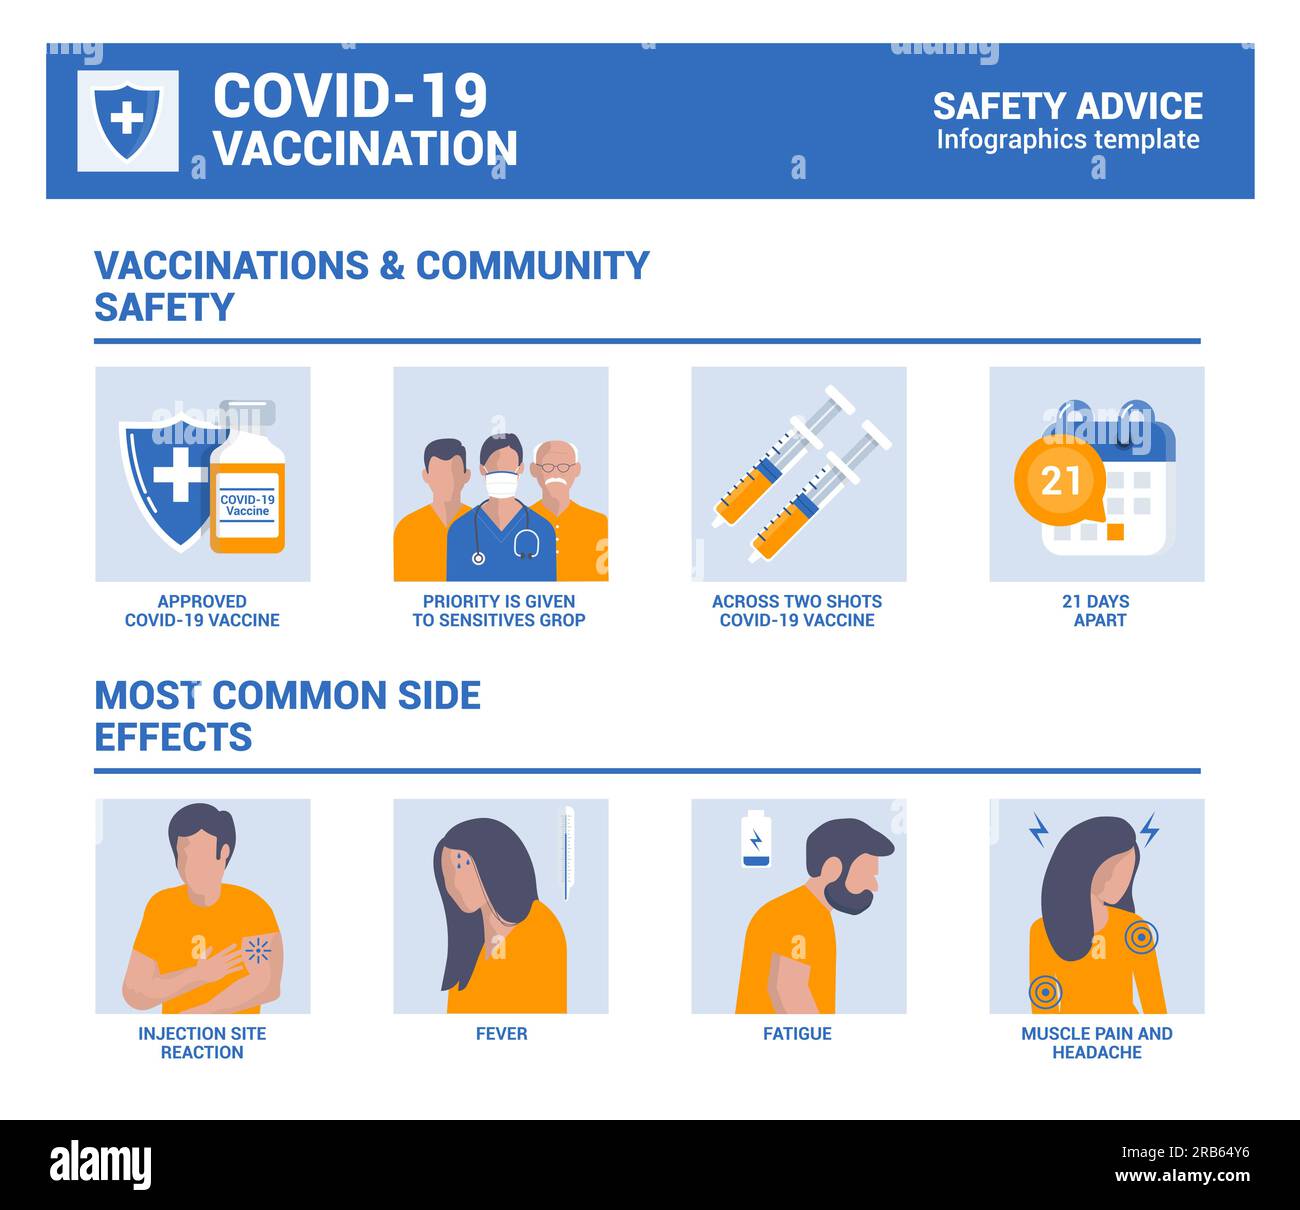 STOPPT COVID-19,2019-nCoV, neuartiges Coronavirus. Impfungen und Sicherheit in der Gemeinschaft, Infografiken zu den häufigsten Nebenwirkungen. Vektordarstellung Stock Vektor